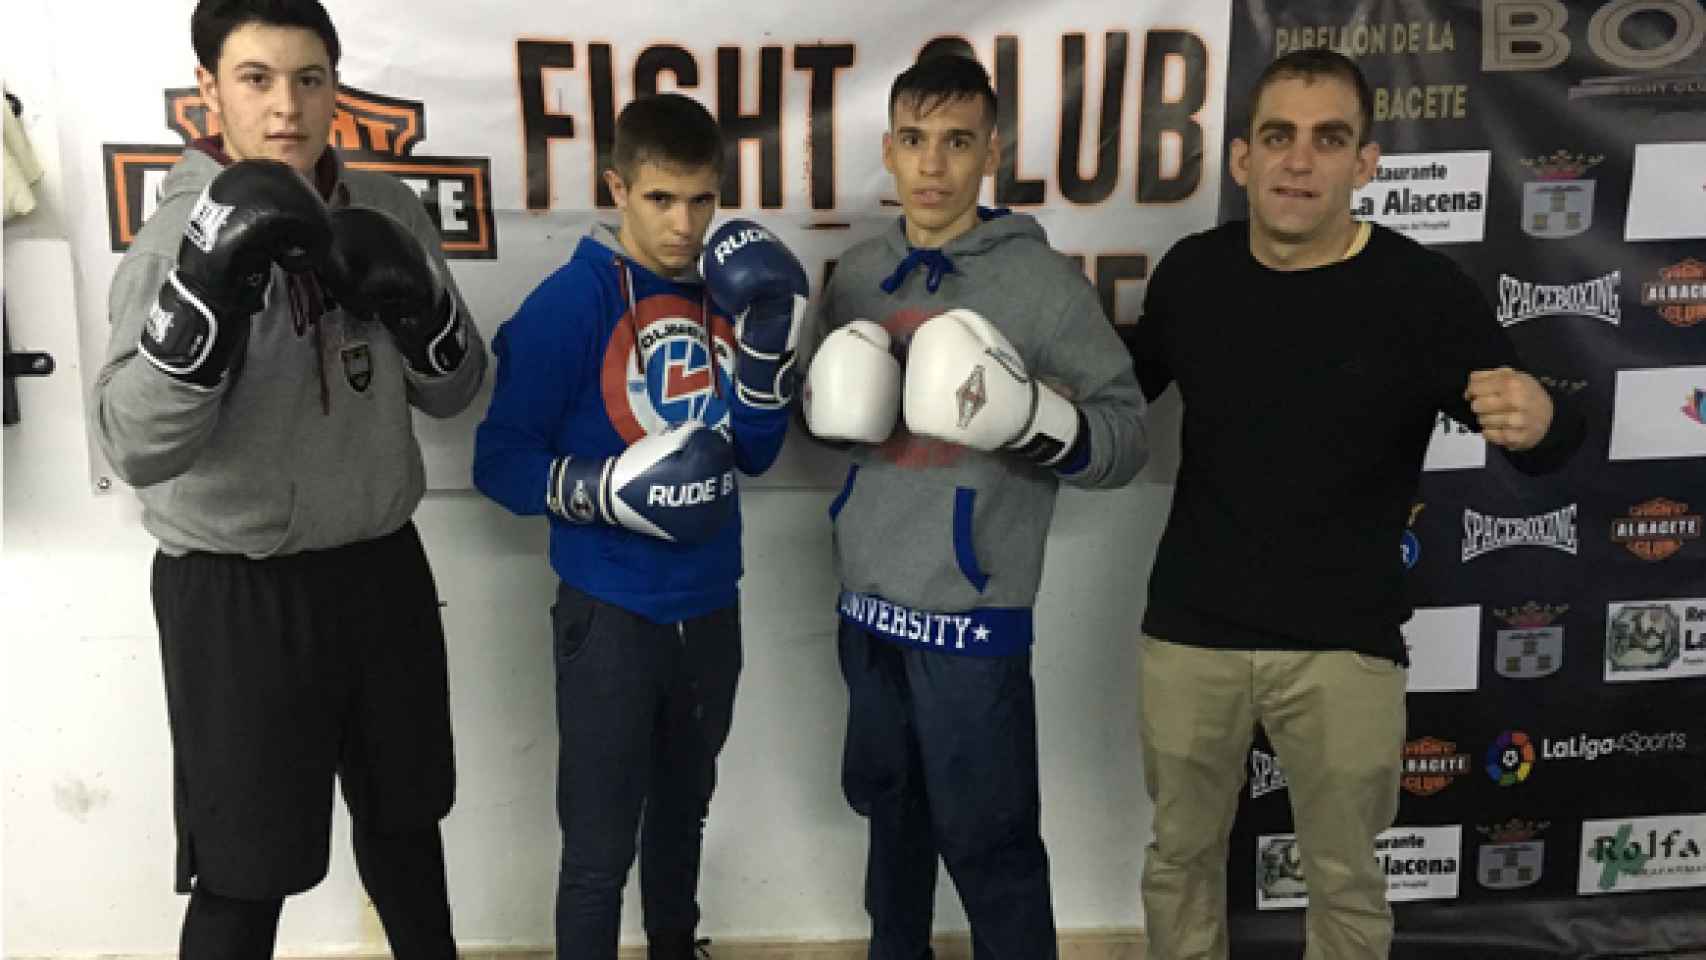 FOTO: Fight Club Albacete